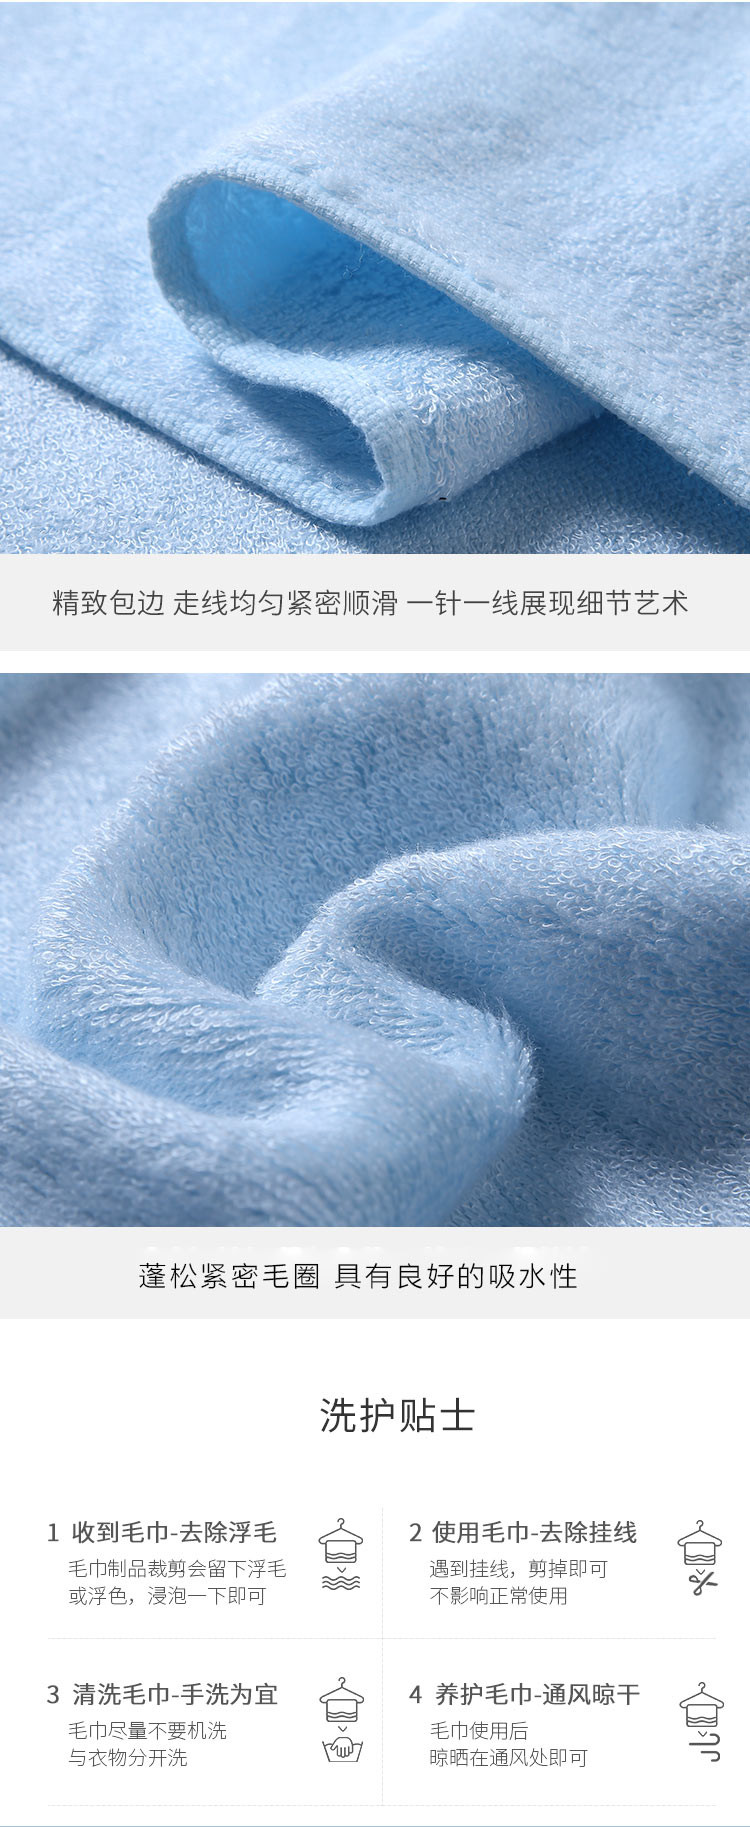 竹一百 竹一百竹纤维舒适吸水小毛巾儿童洗脸巾6条装8099